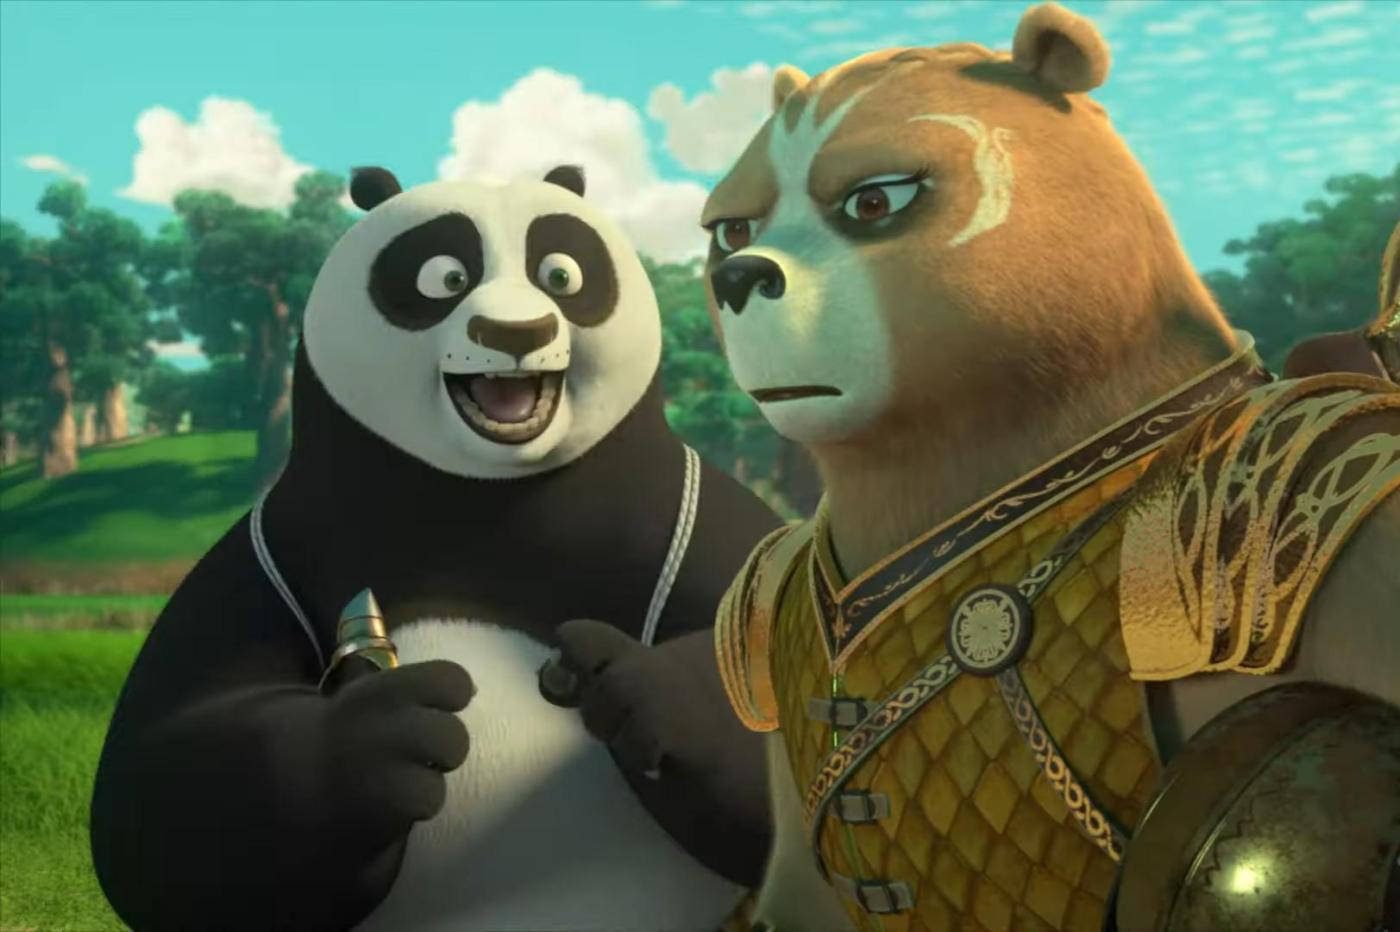 Po et Luthera dans la nouvelle série Kung Fu Panda pour Netflix